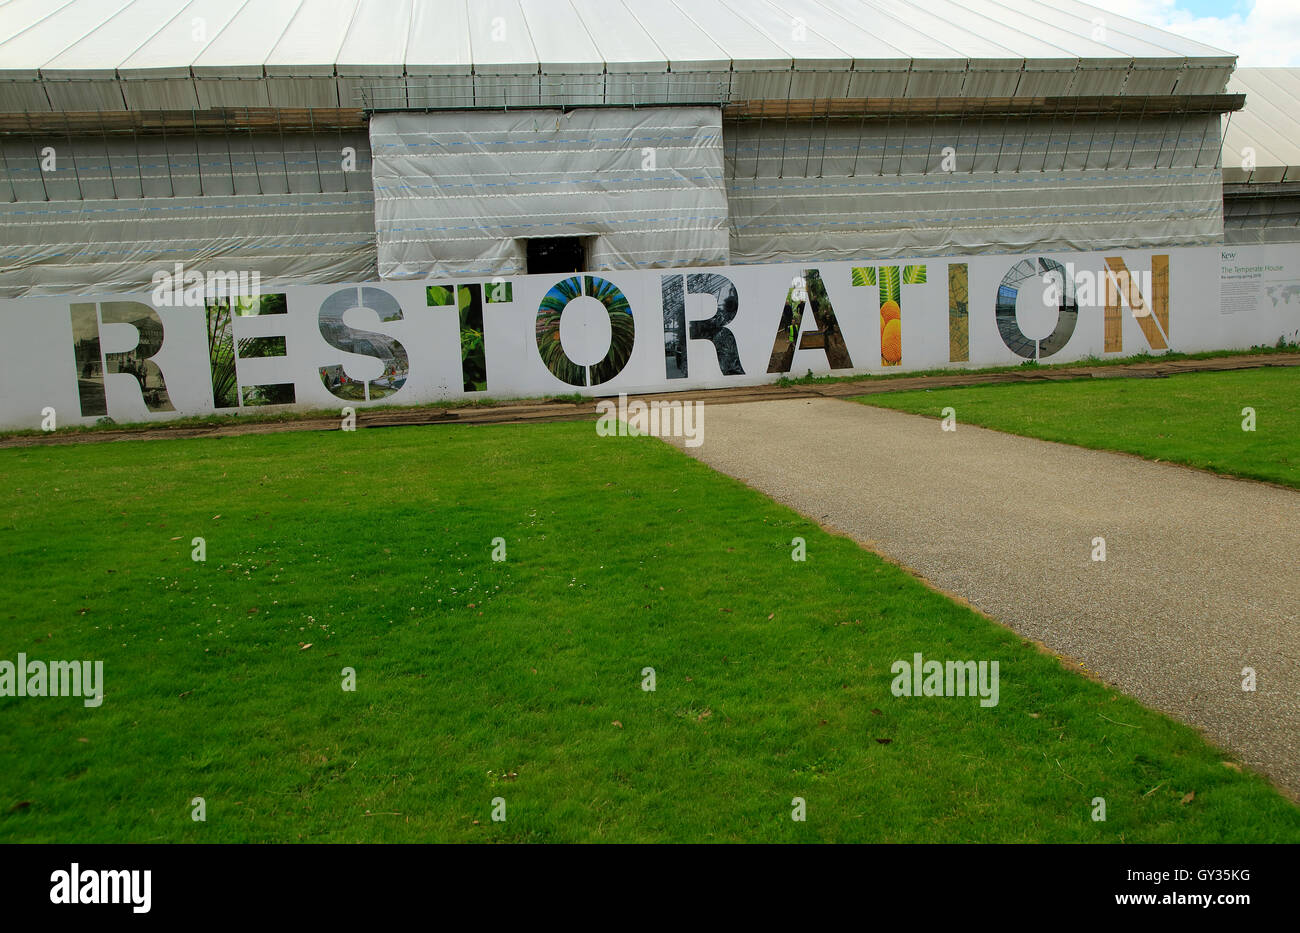 Travaux de restauration signe en Europe, projet de rénovation,Royal Botanic Gardens, Kew, Londres, Angleterre, Royaume-Uni Banque D'Images